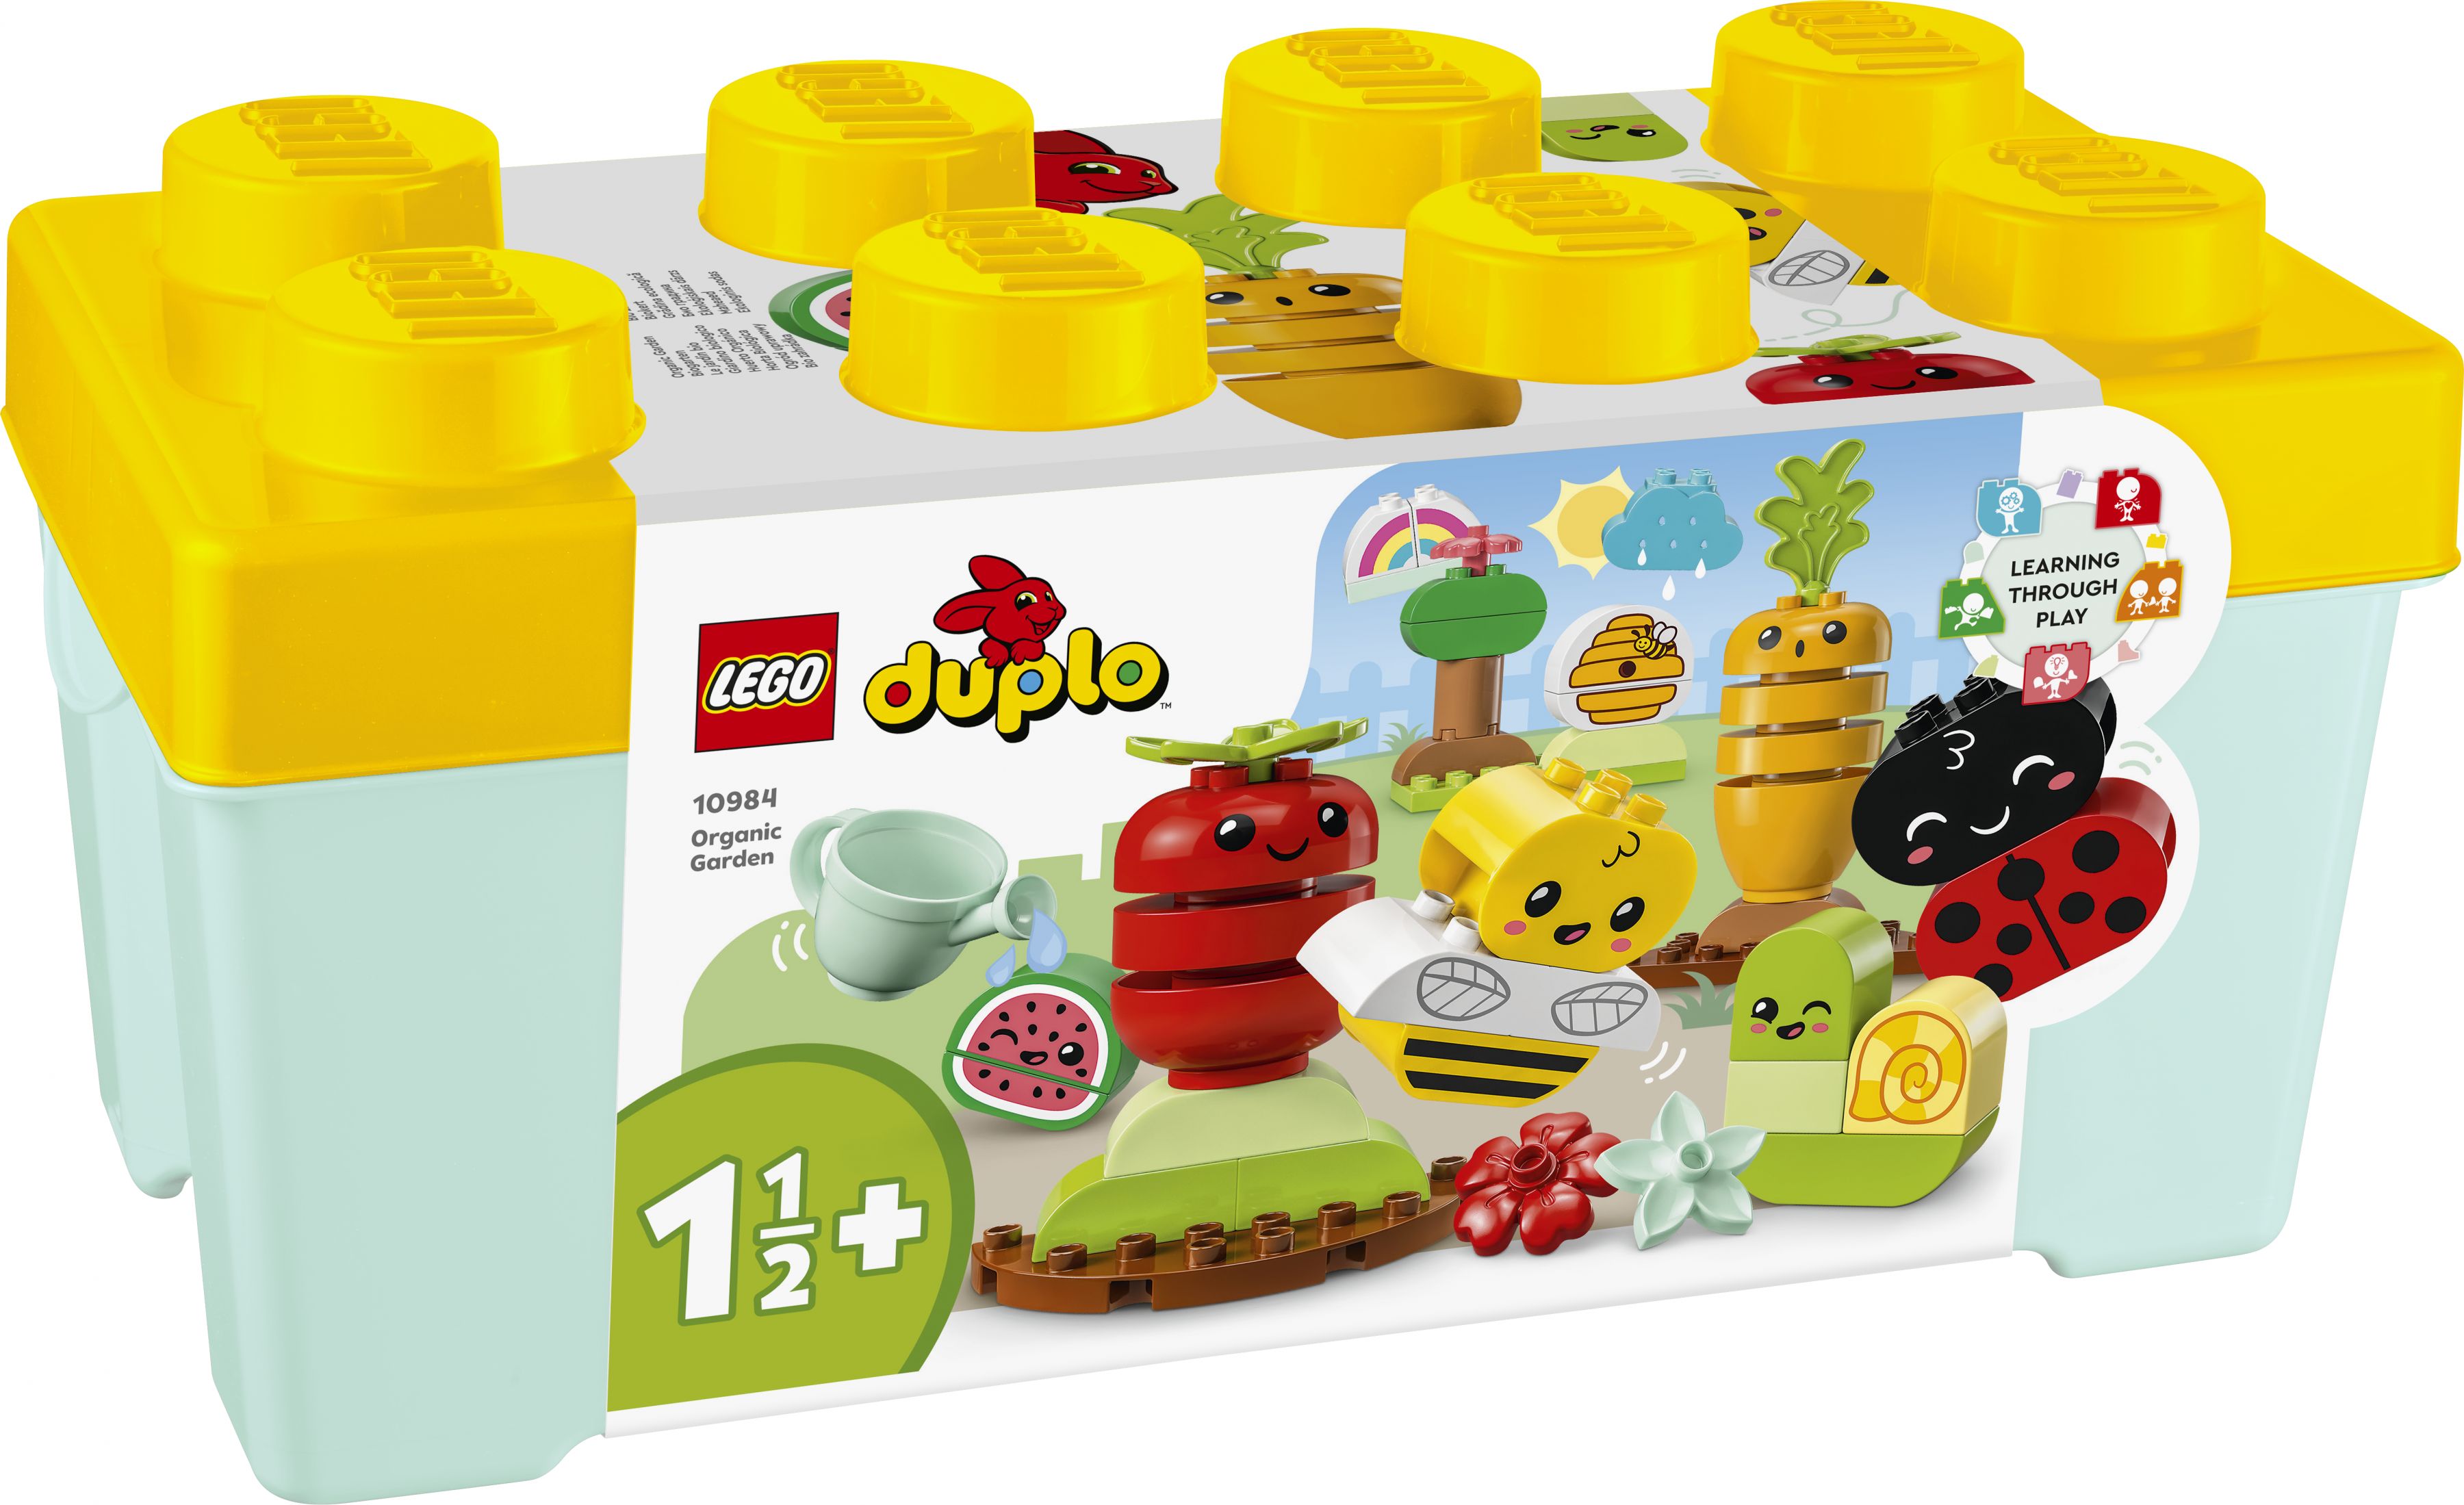 LEGO Duplo 10984 Biogarten LEGO_10984_Box1_v29.jpg